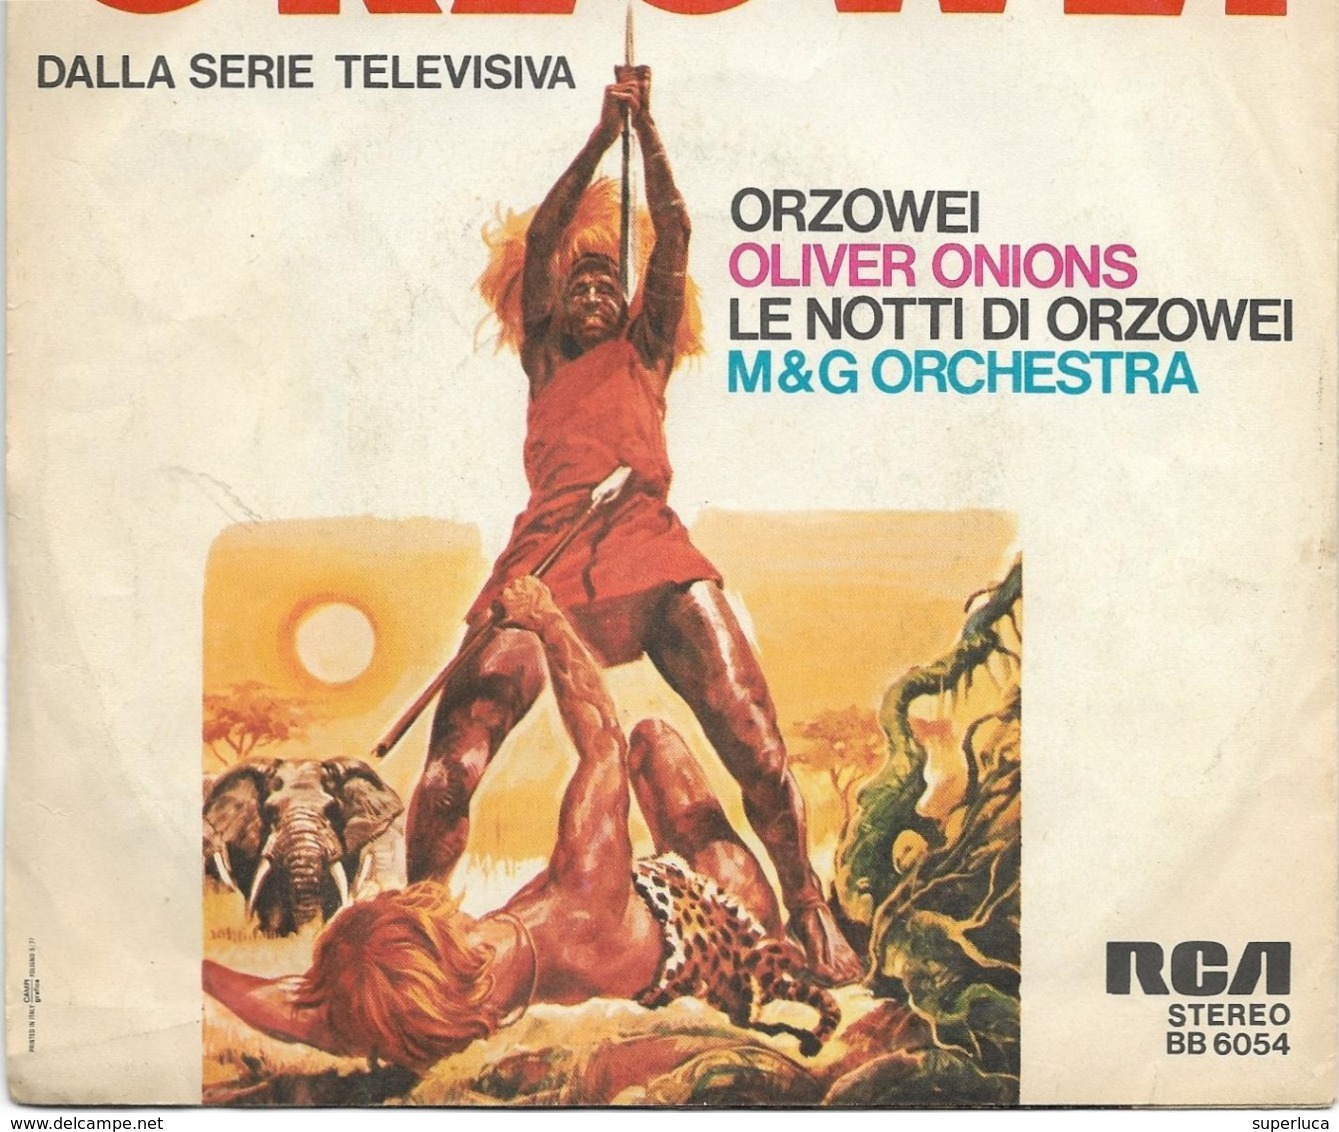 7-ORZOWEI DALLA SERIE TELEVISIVA-ANNI 70-OLIVER ONIONS 45 GIRI - Musica Di Film